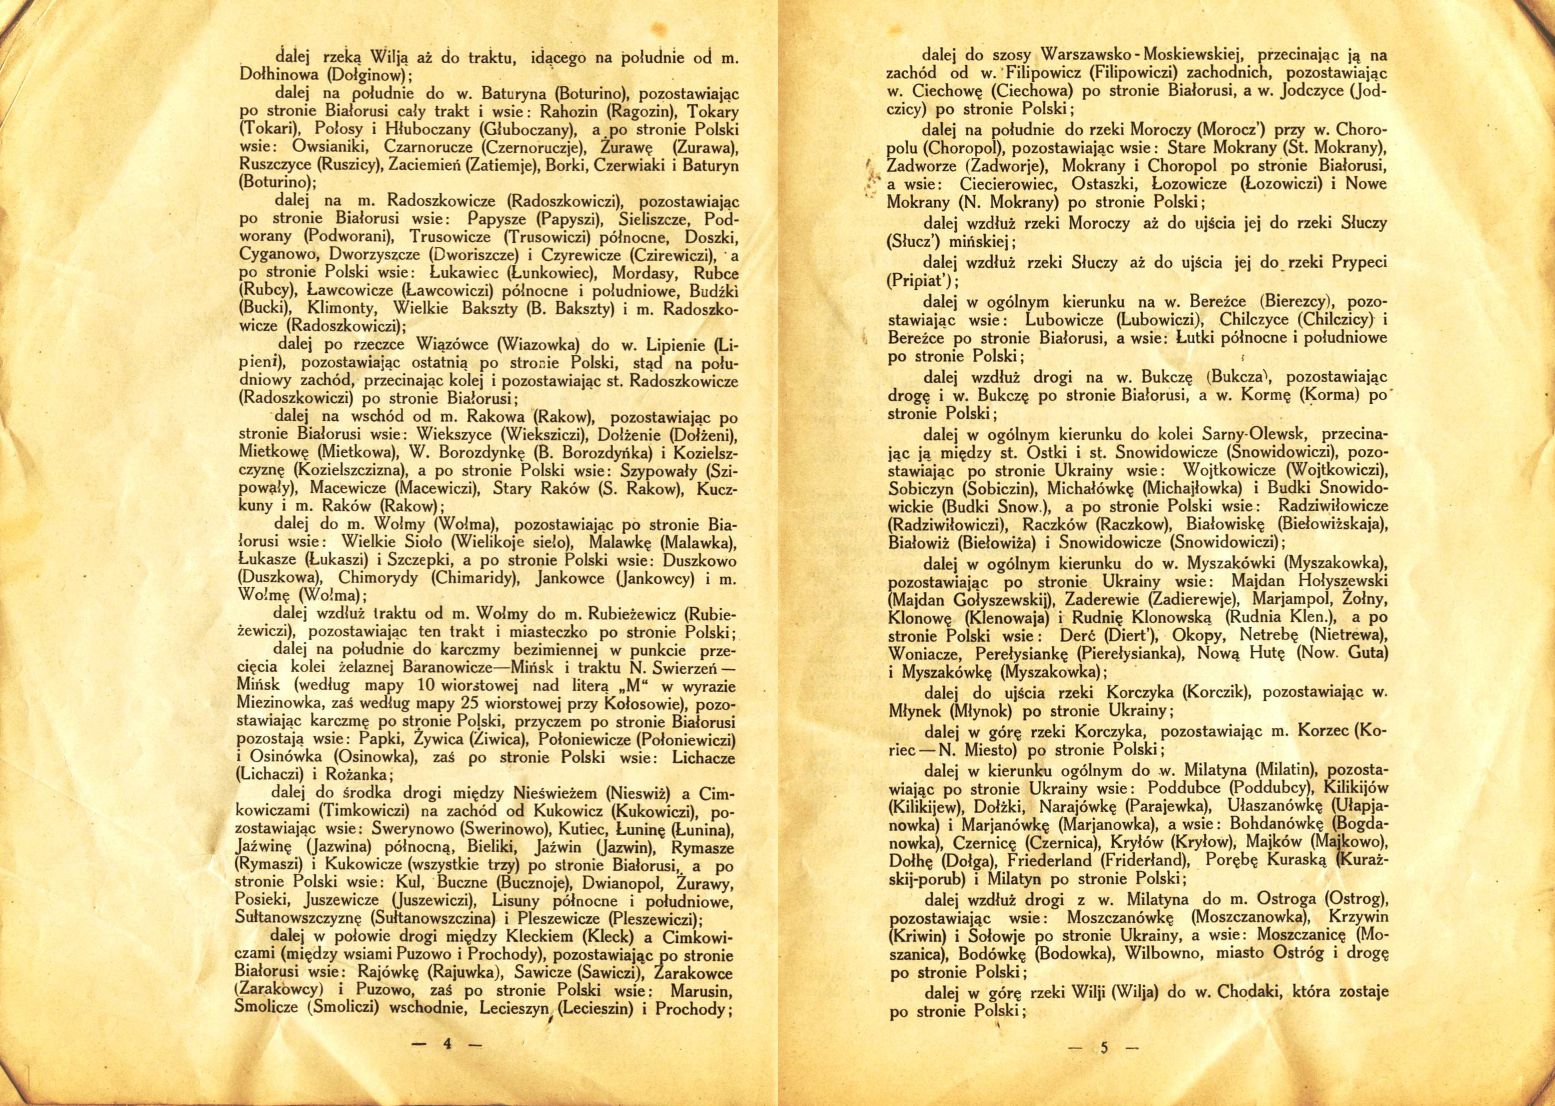 Traktat Pokoju między Polską a Rosją i Ukrainą podpisany w Rydze dnia 18 marca 1921 roku, s. 4-5, Akta Jana Dąbskiego, sygn. 5